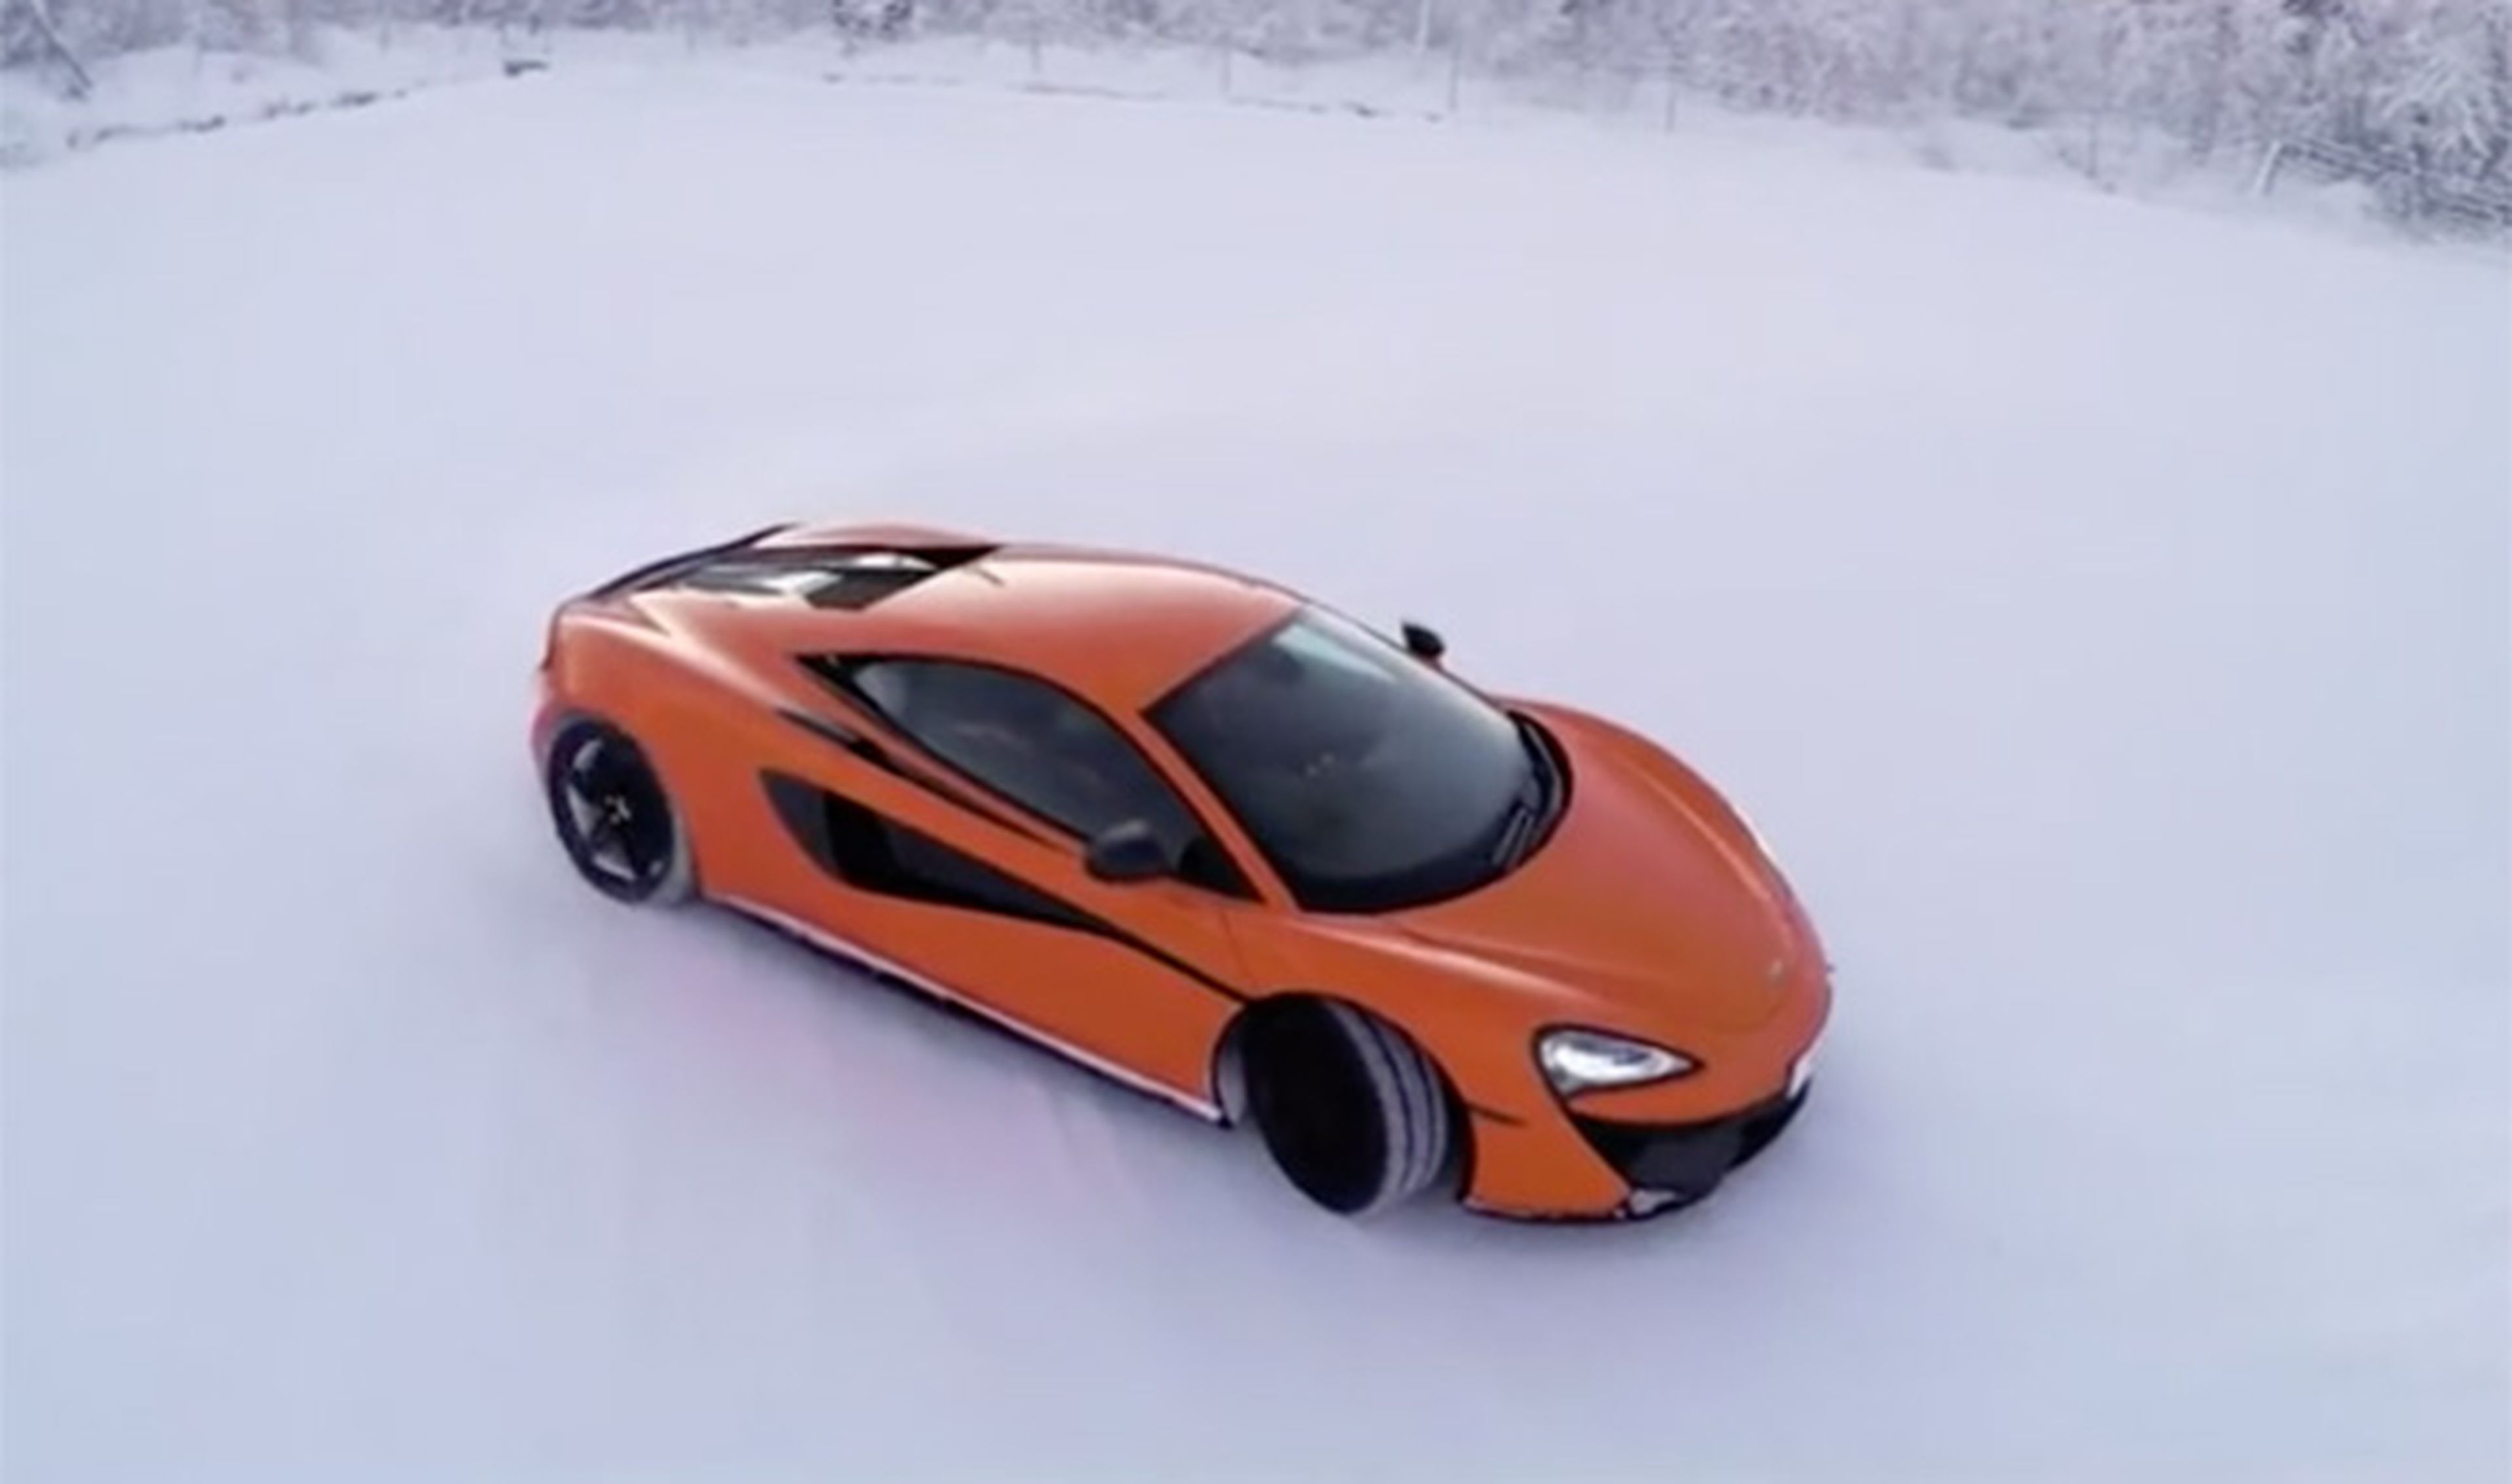 ¡Wow! Un McLaren 570S derrapando en un lago helado